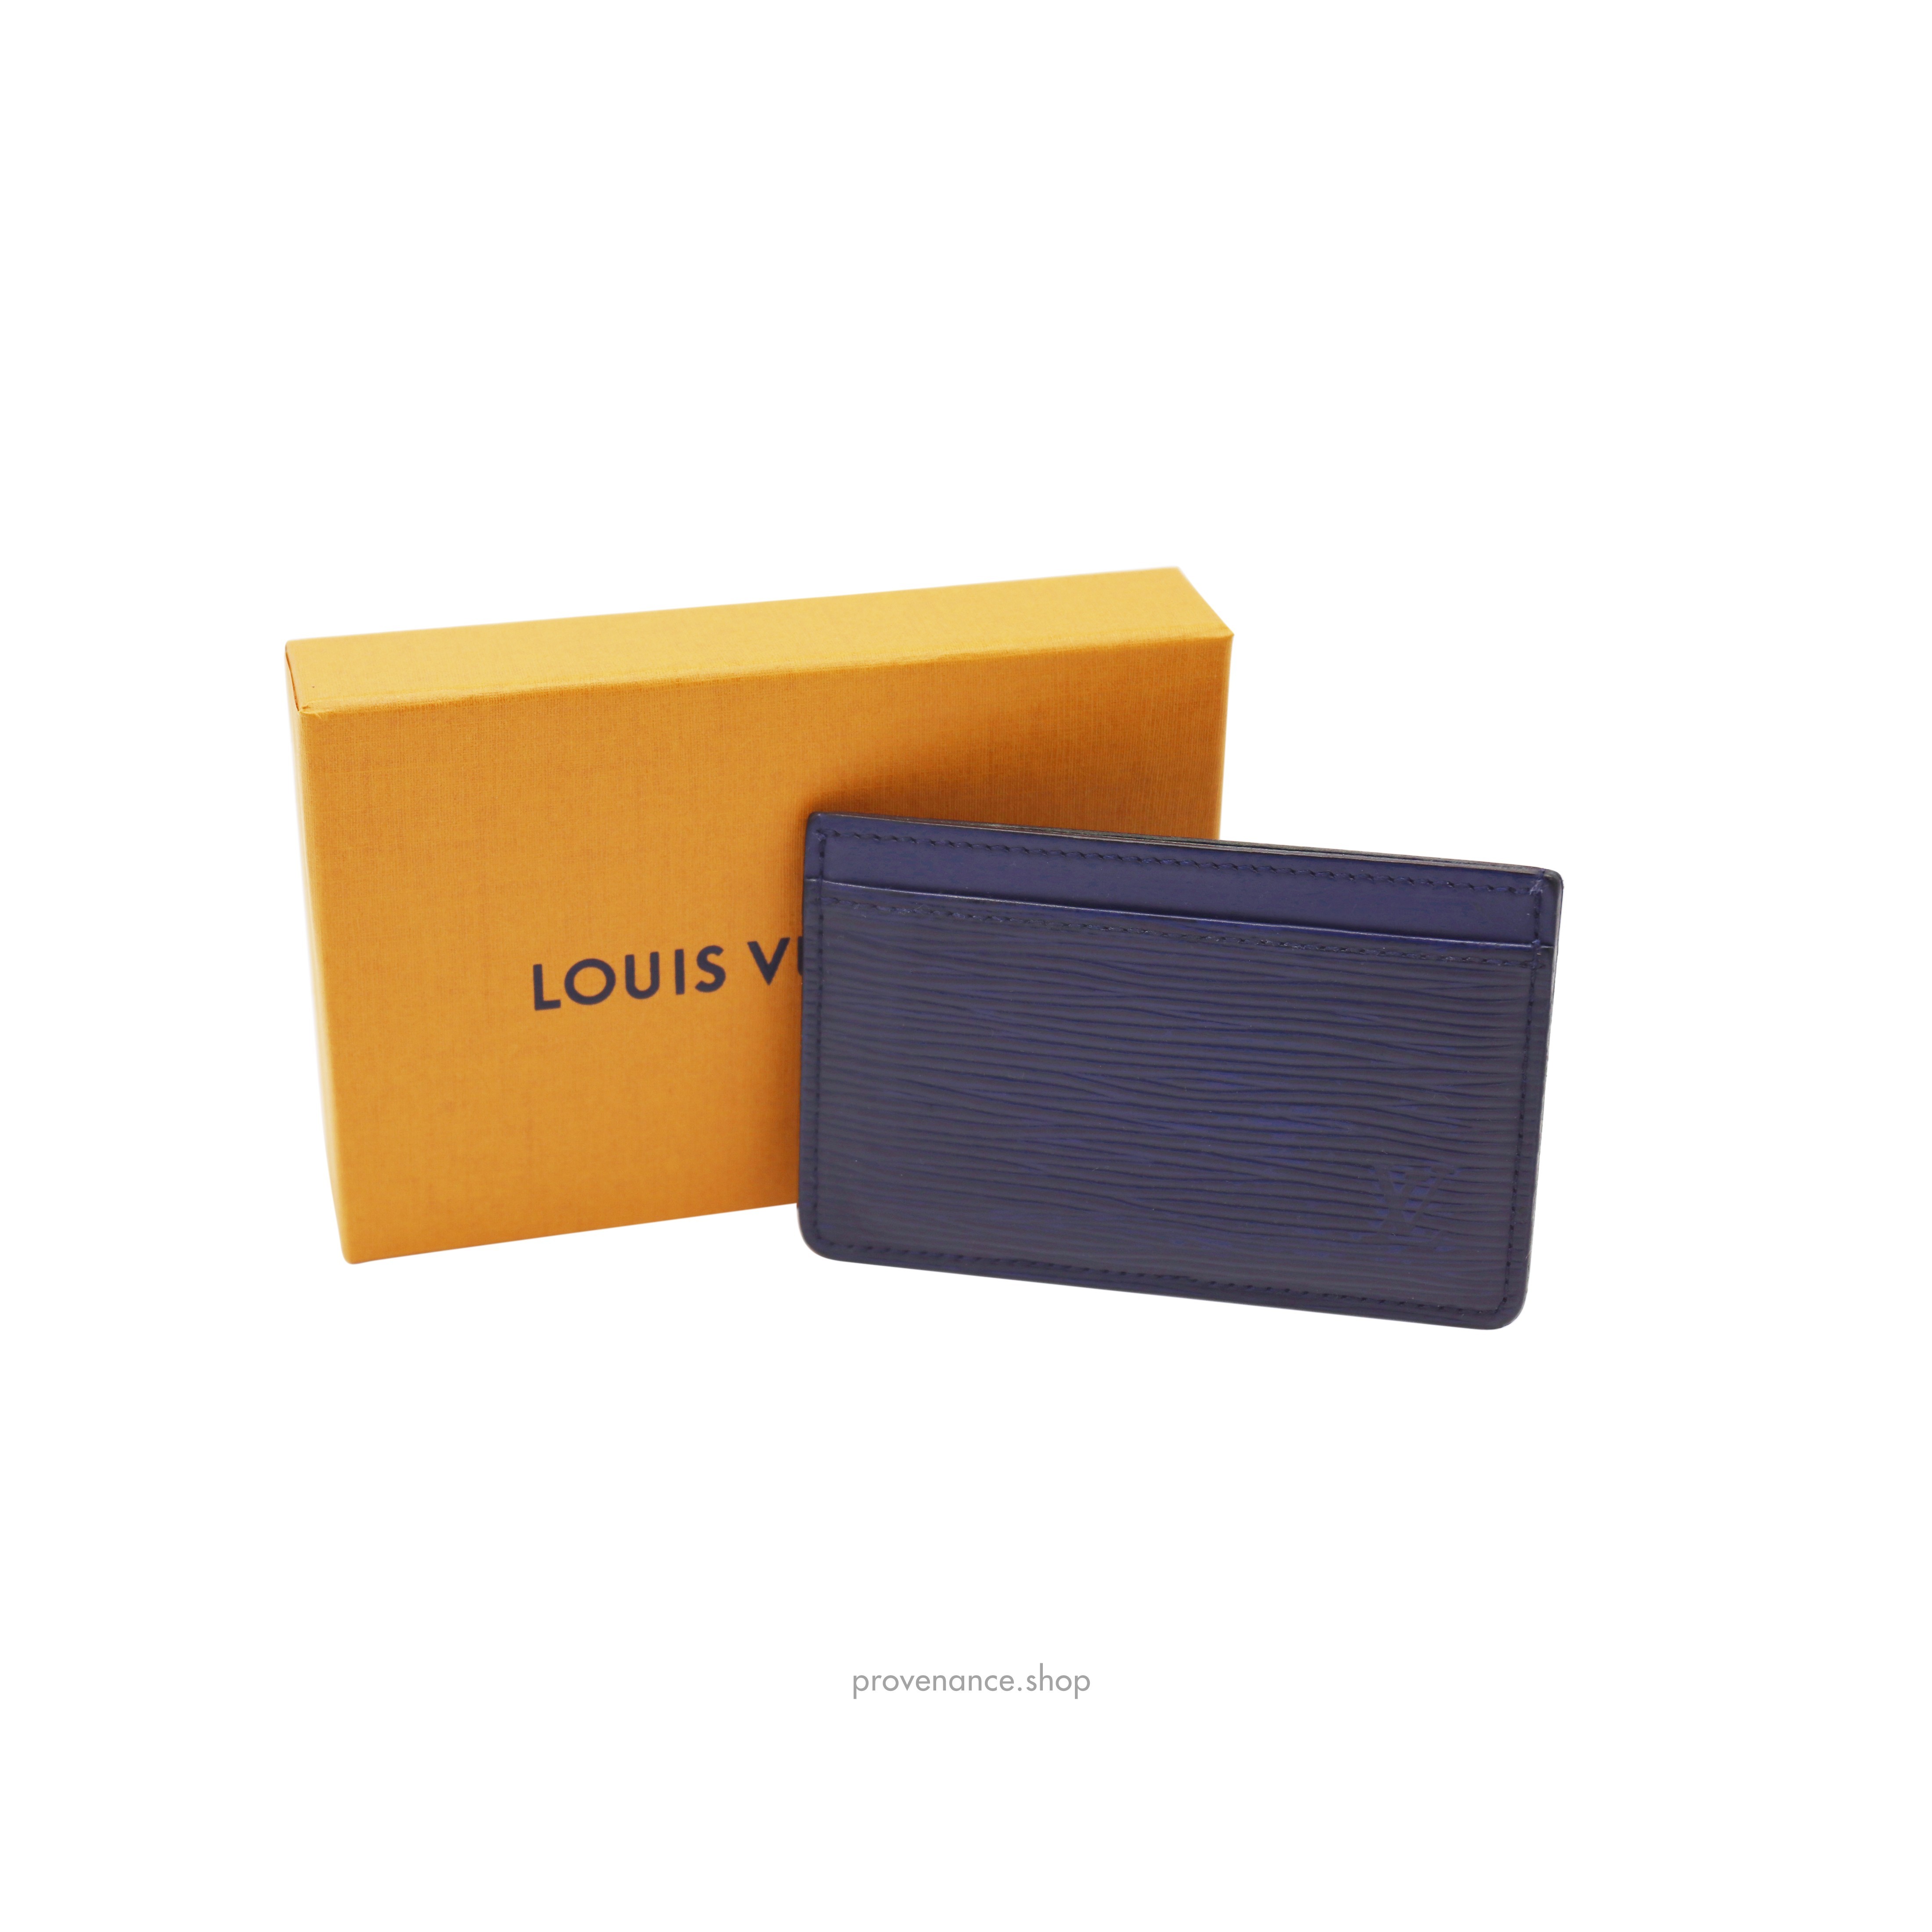 Card Holder Wallet - Navy Blue Epi Leather - 2